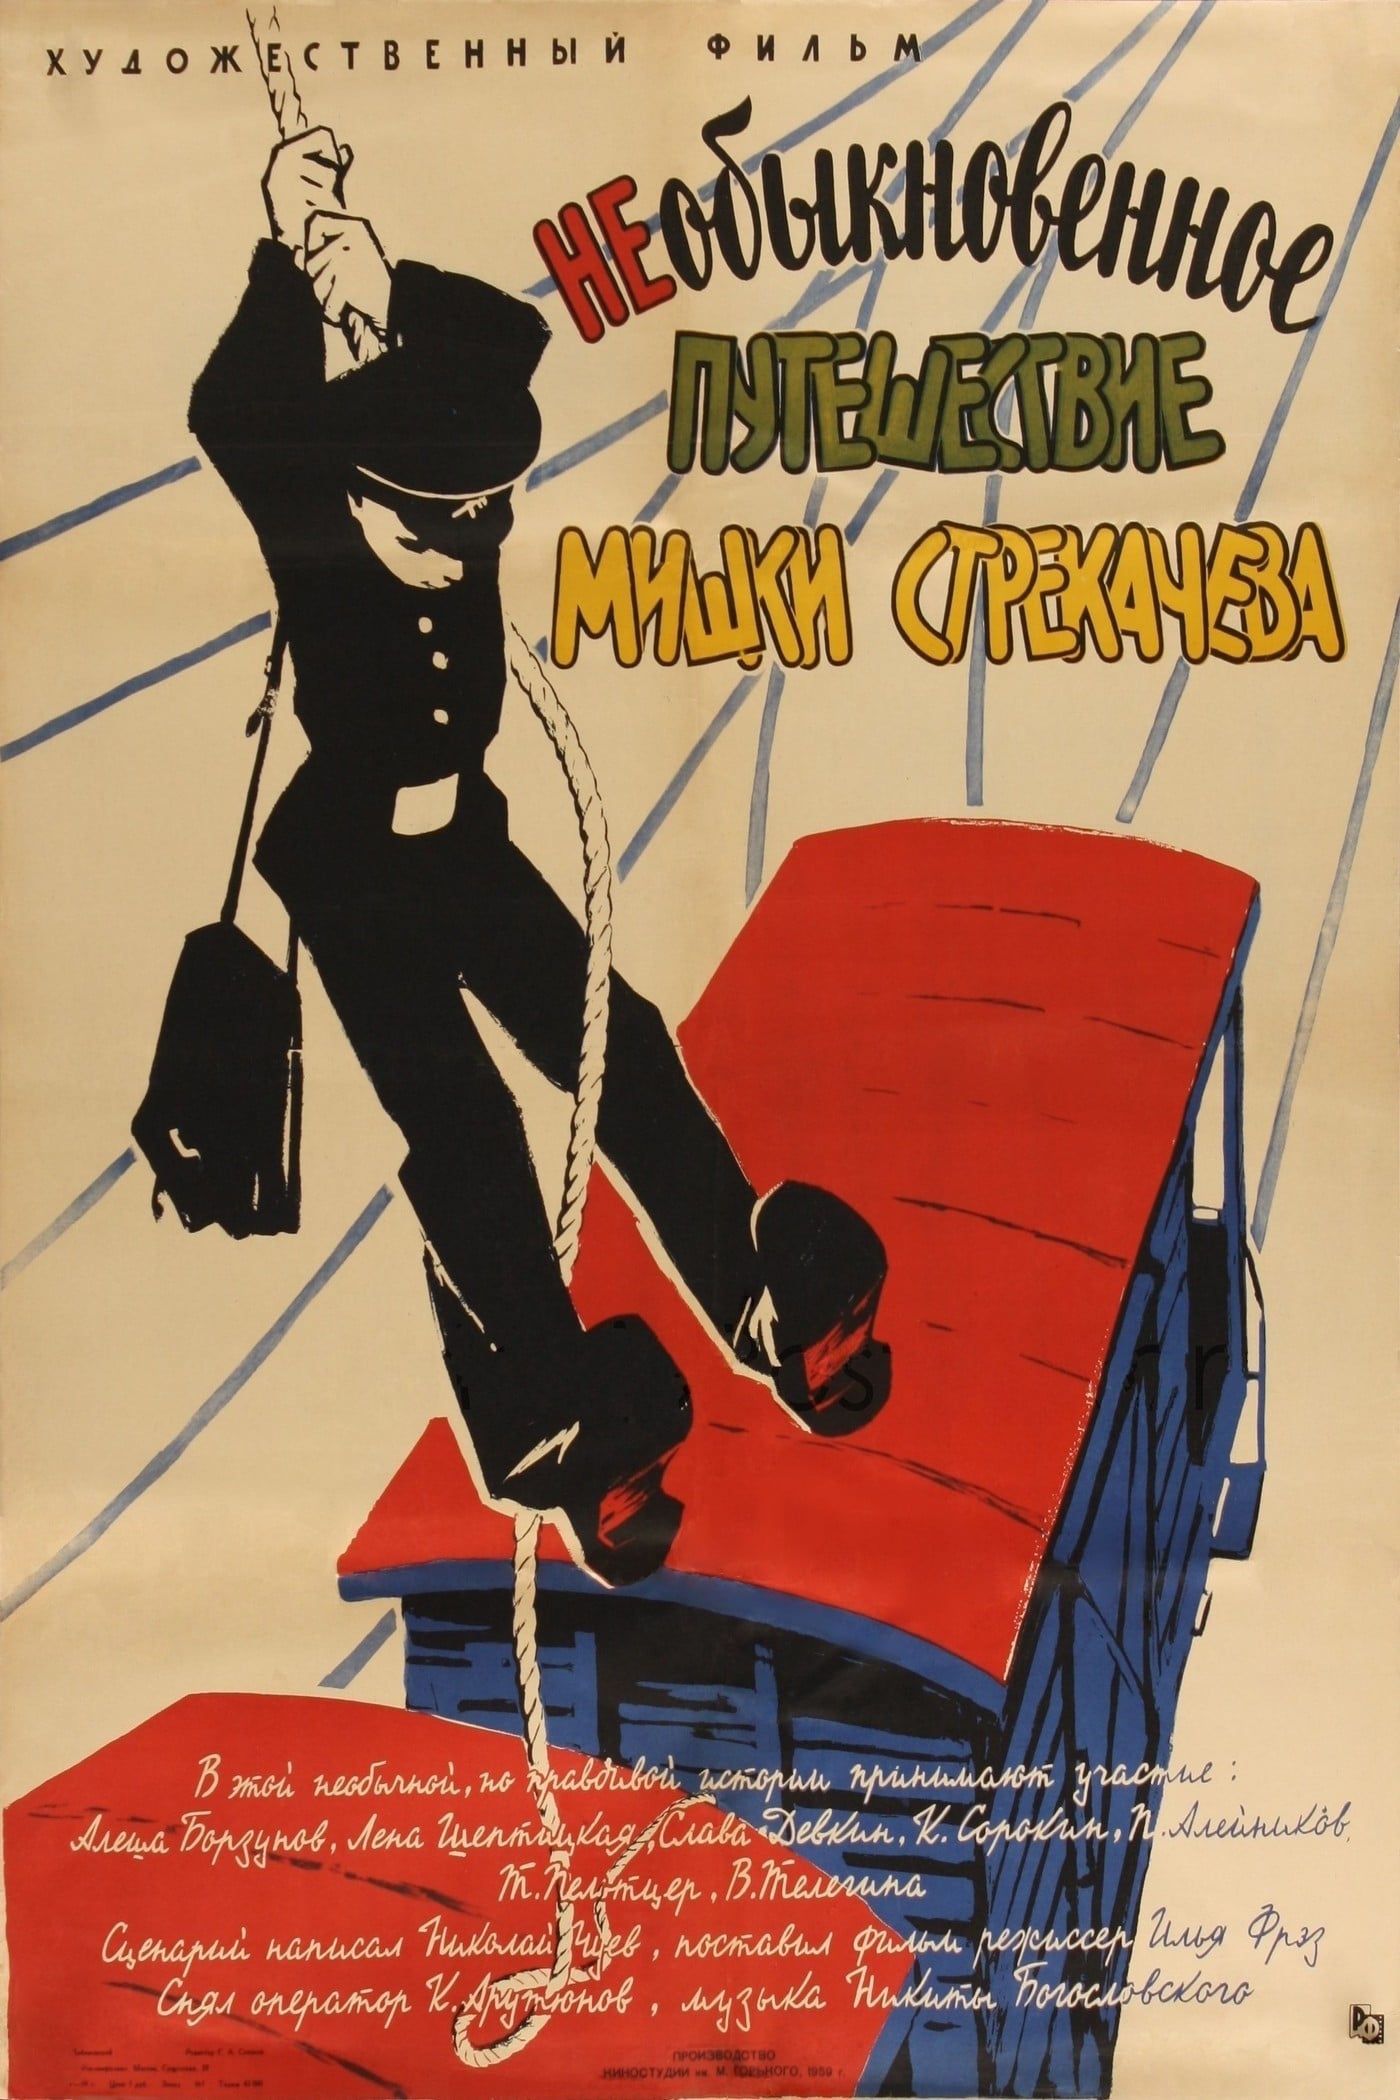 The Unusual Voyage of Mishka Strekachyov